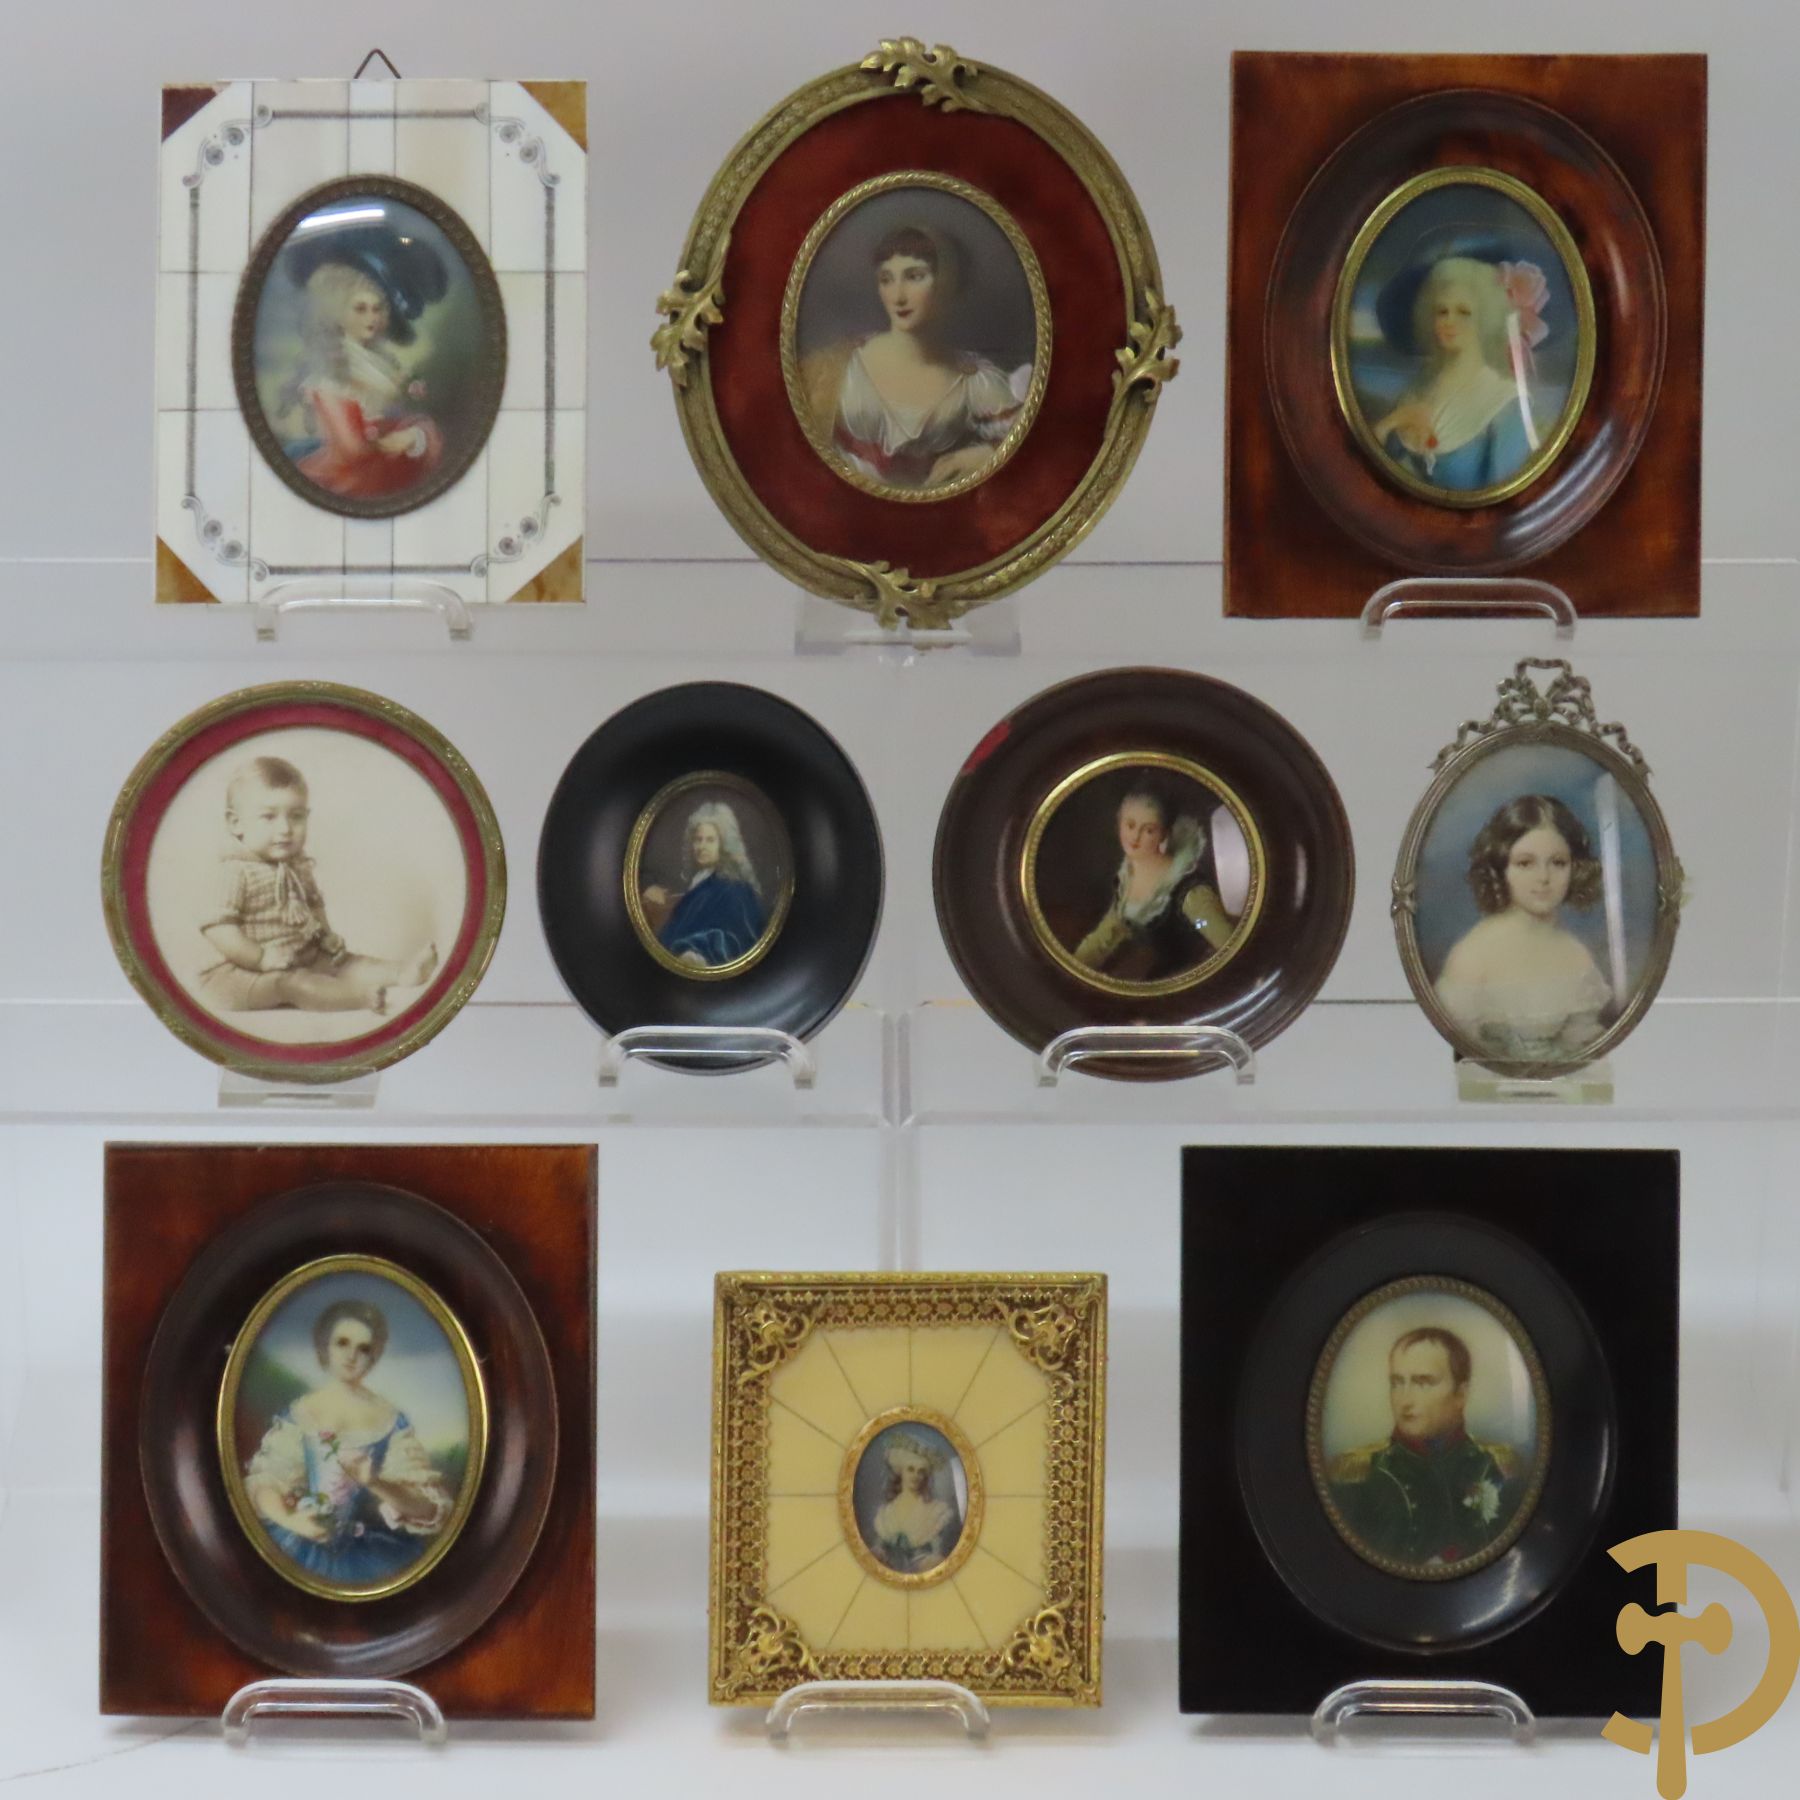 Reeks van 8 miniaturen van edeldames, waarvan 1 getekend van Nattier en 1 van Gainsbourogh + 2 ovale kadertjes